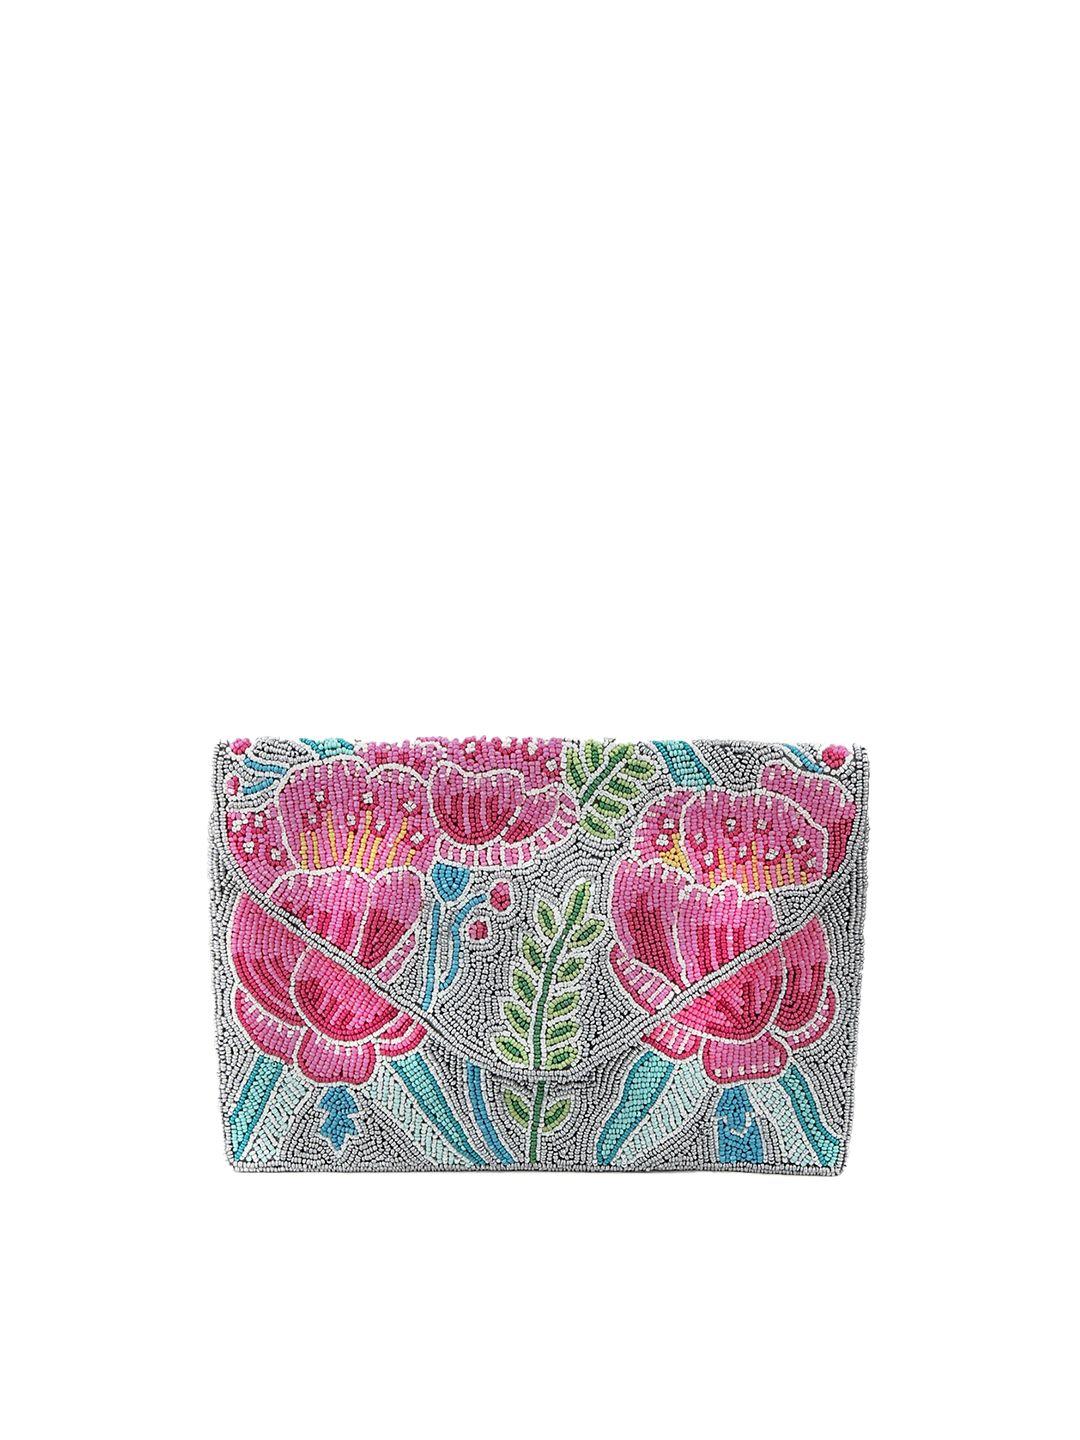 odette pink & blue embellished purse clutch